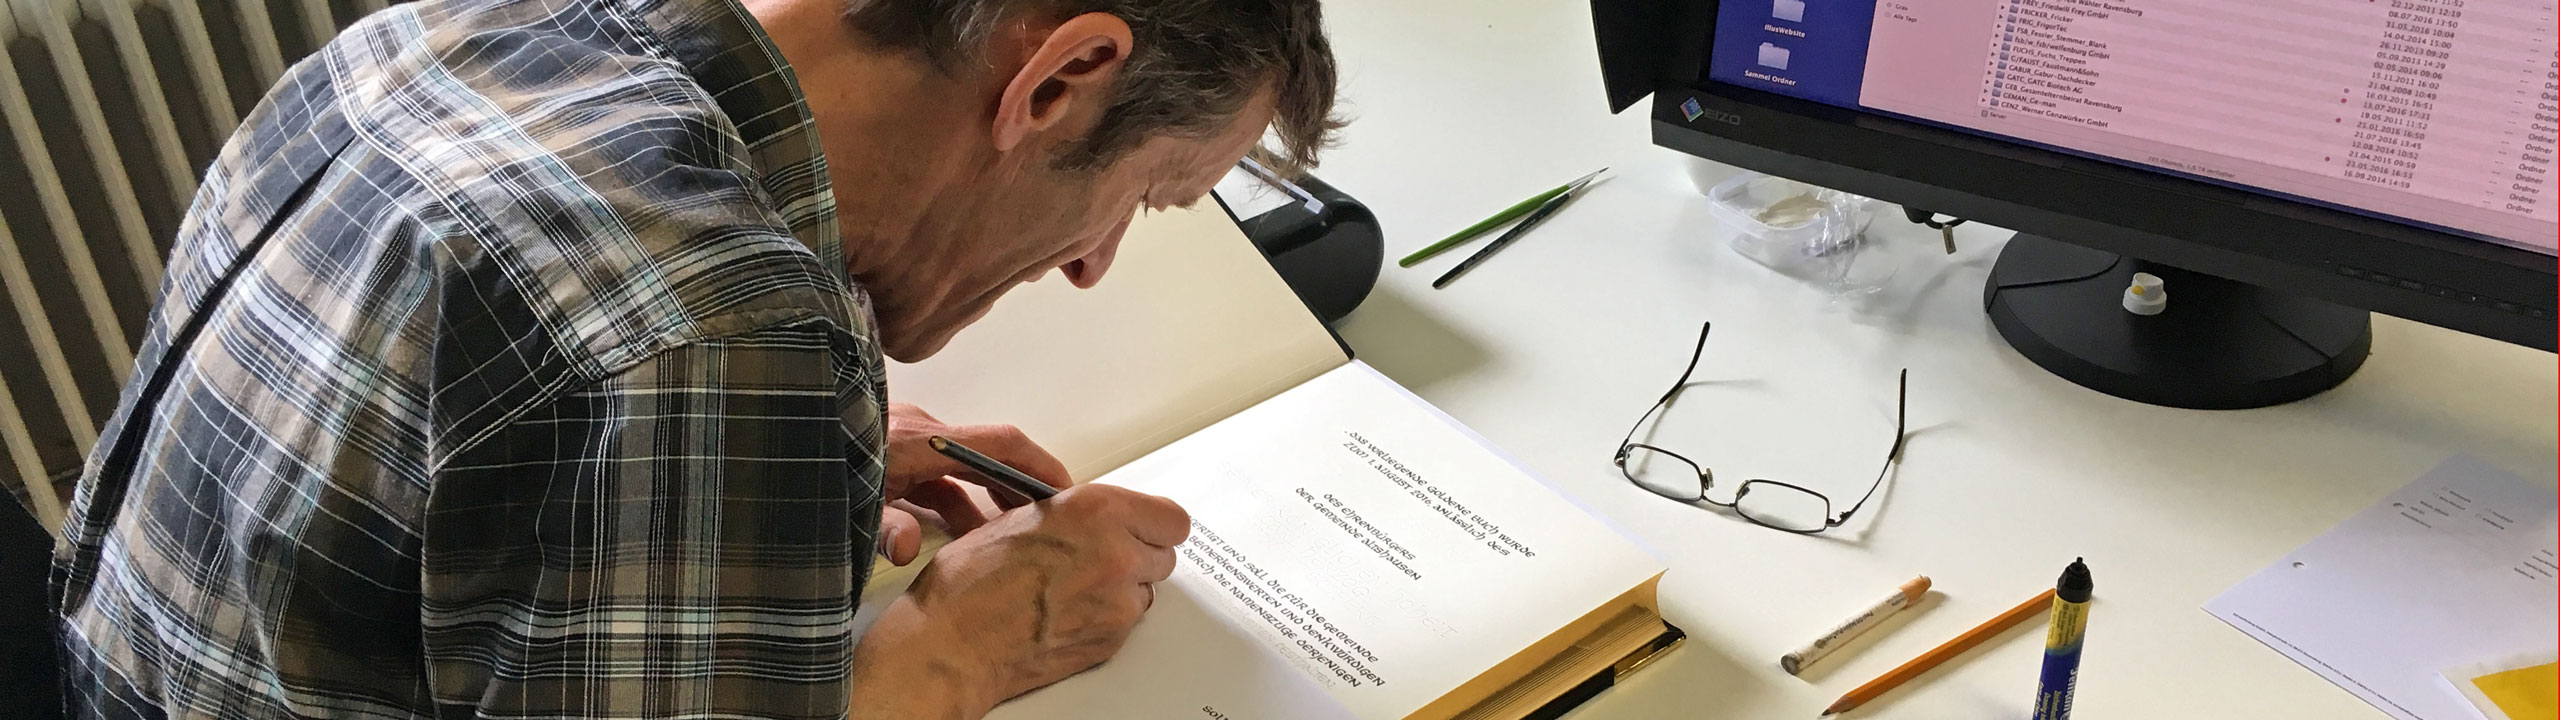 Albrecht Welkoborsky zeichnet die Lettern von Hand